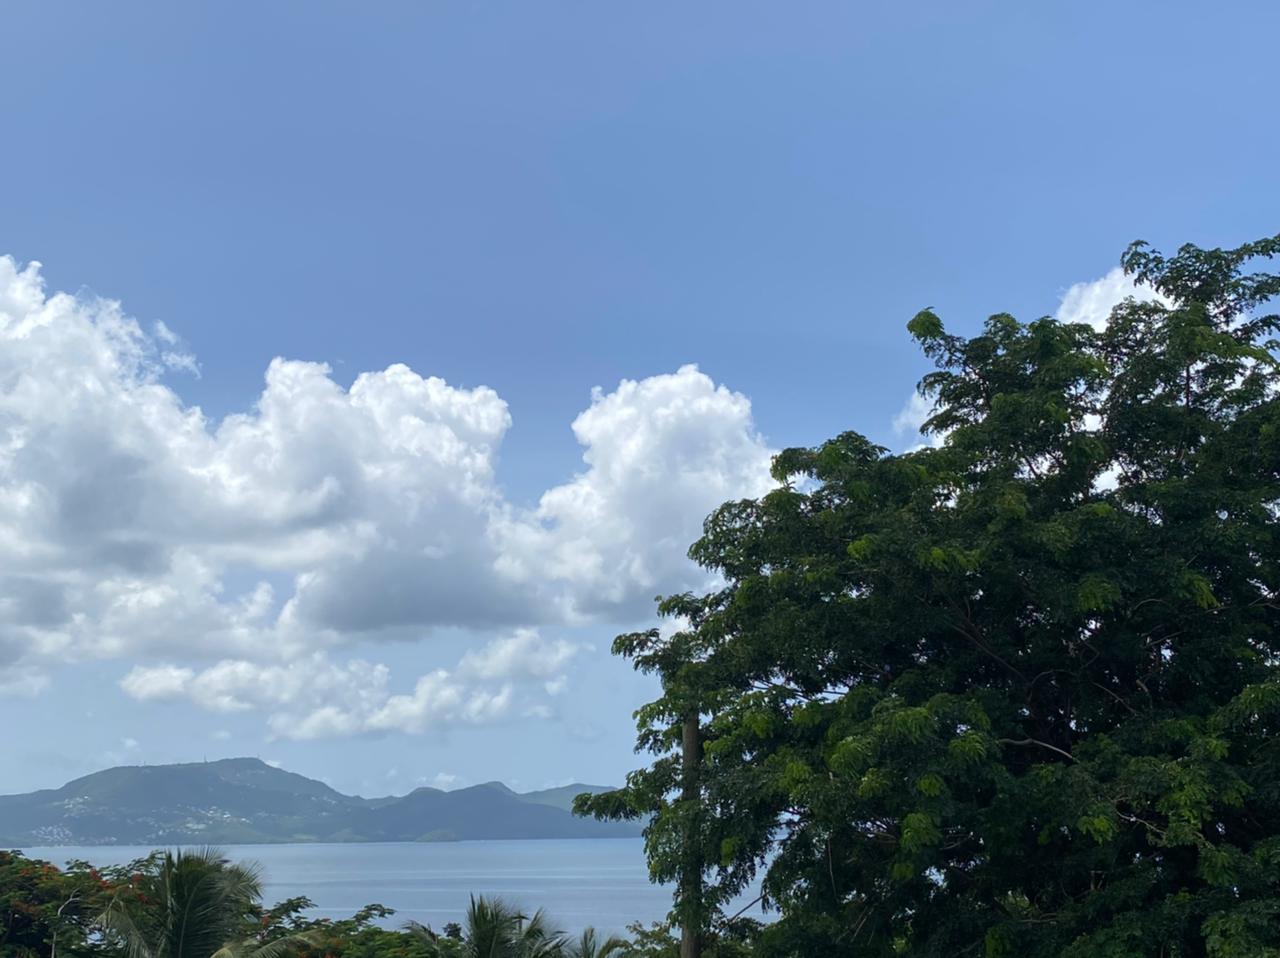     Météo France annonce enfin du beau temps en Martinique

